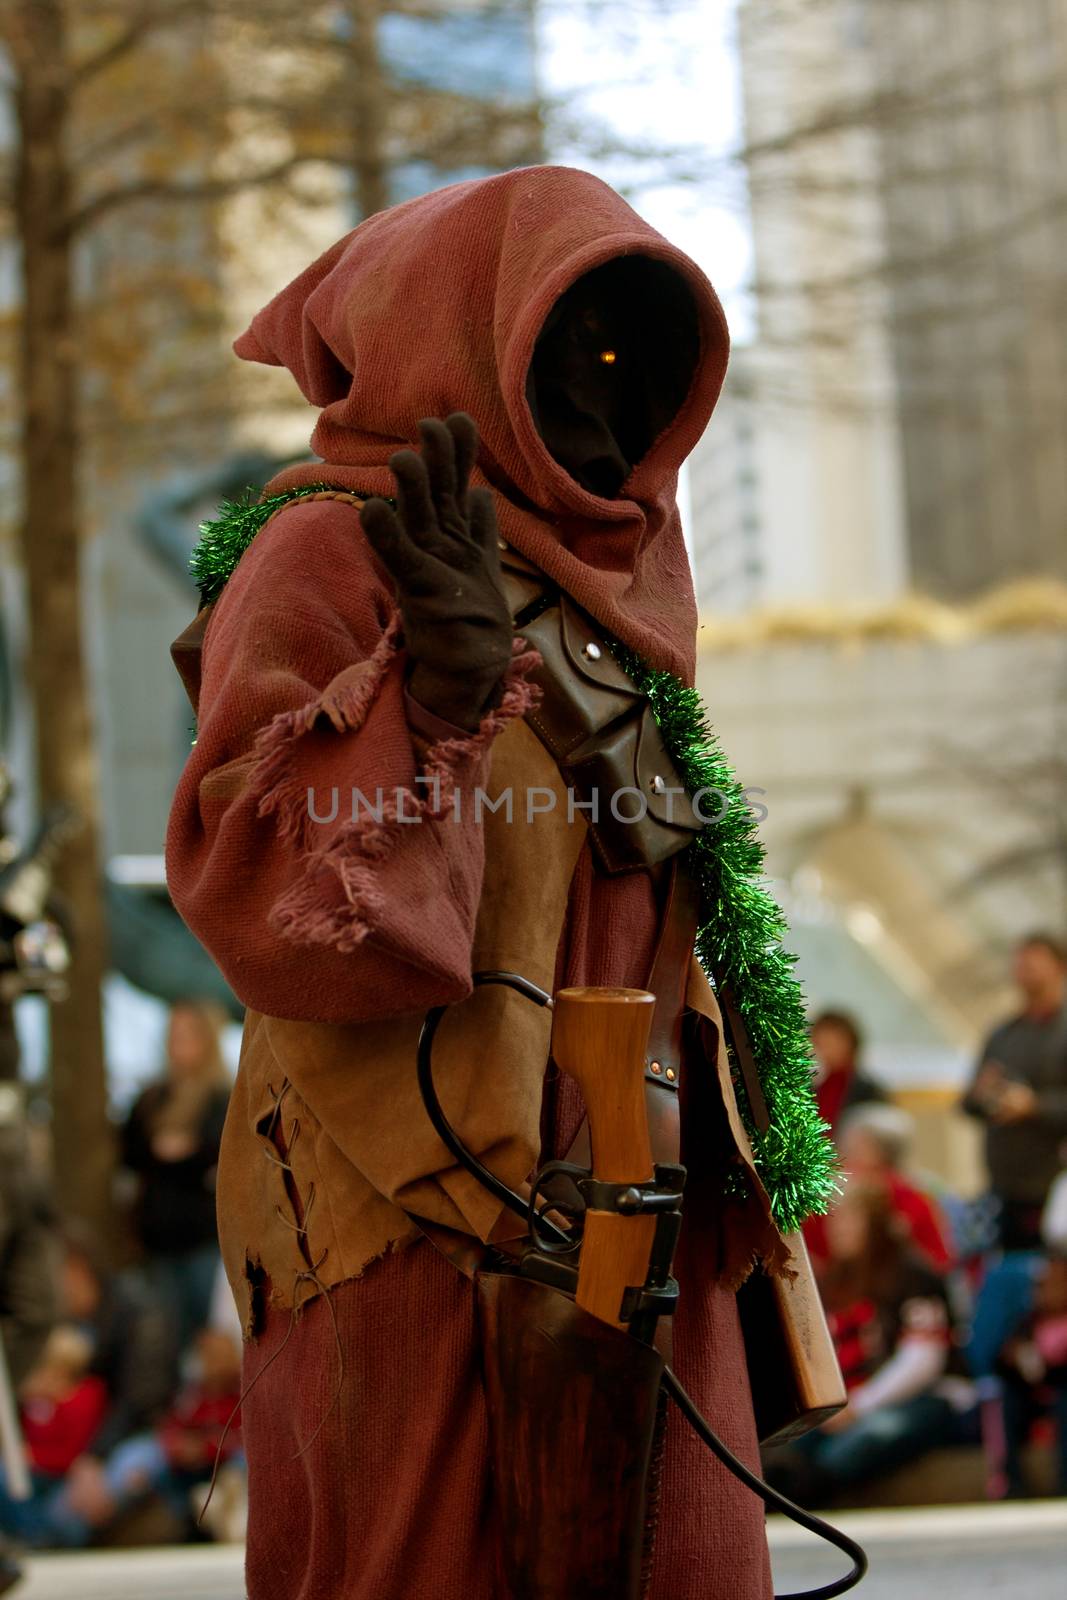 Star Wars Jawa Character Walks In Atlanta Christmas Parade by BluIz60